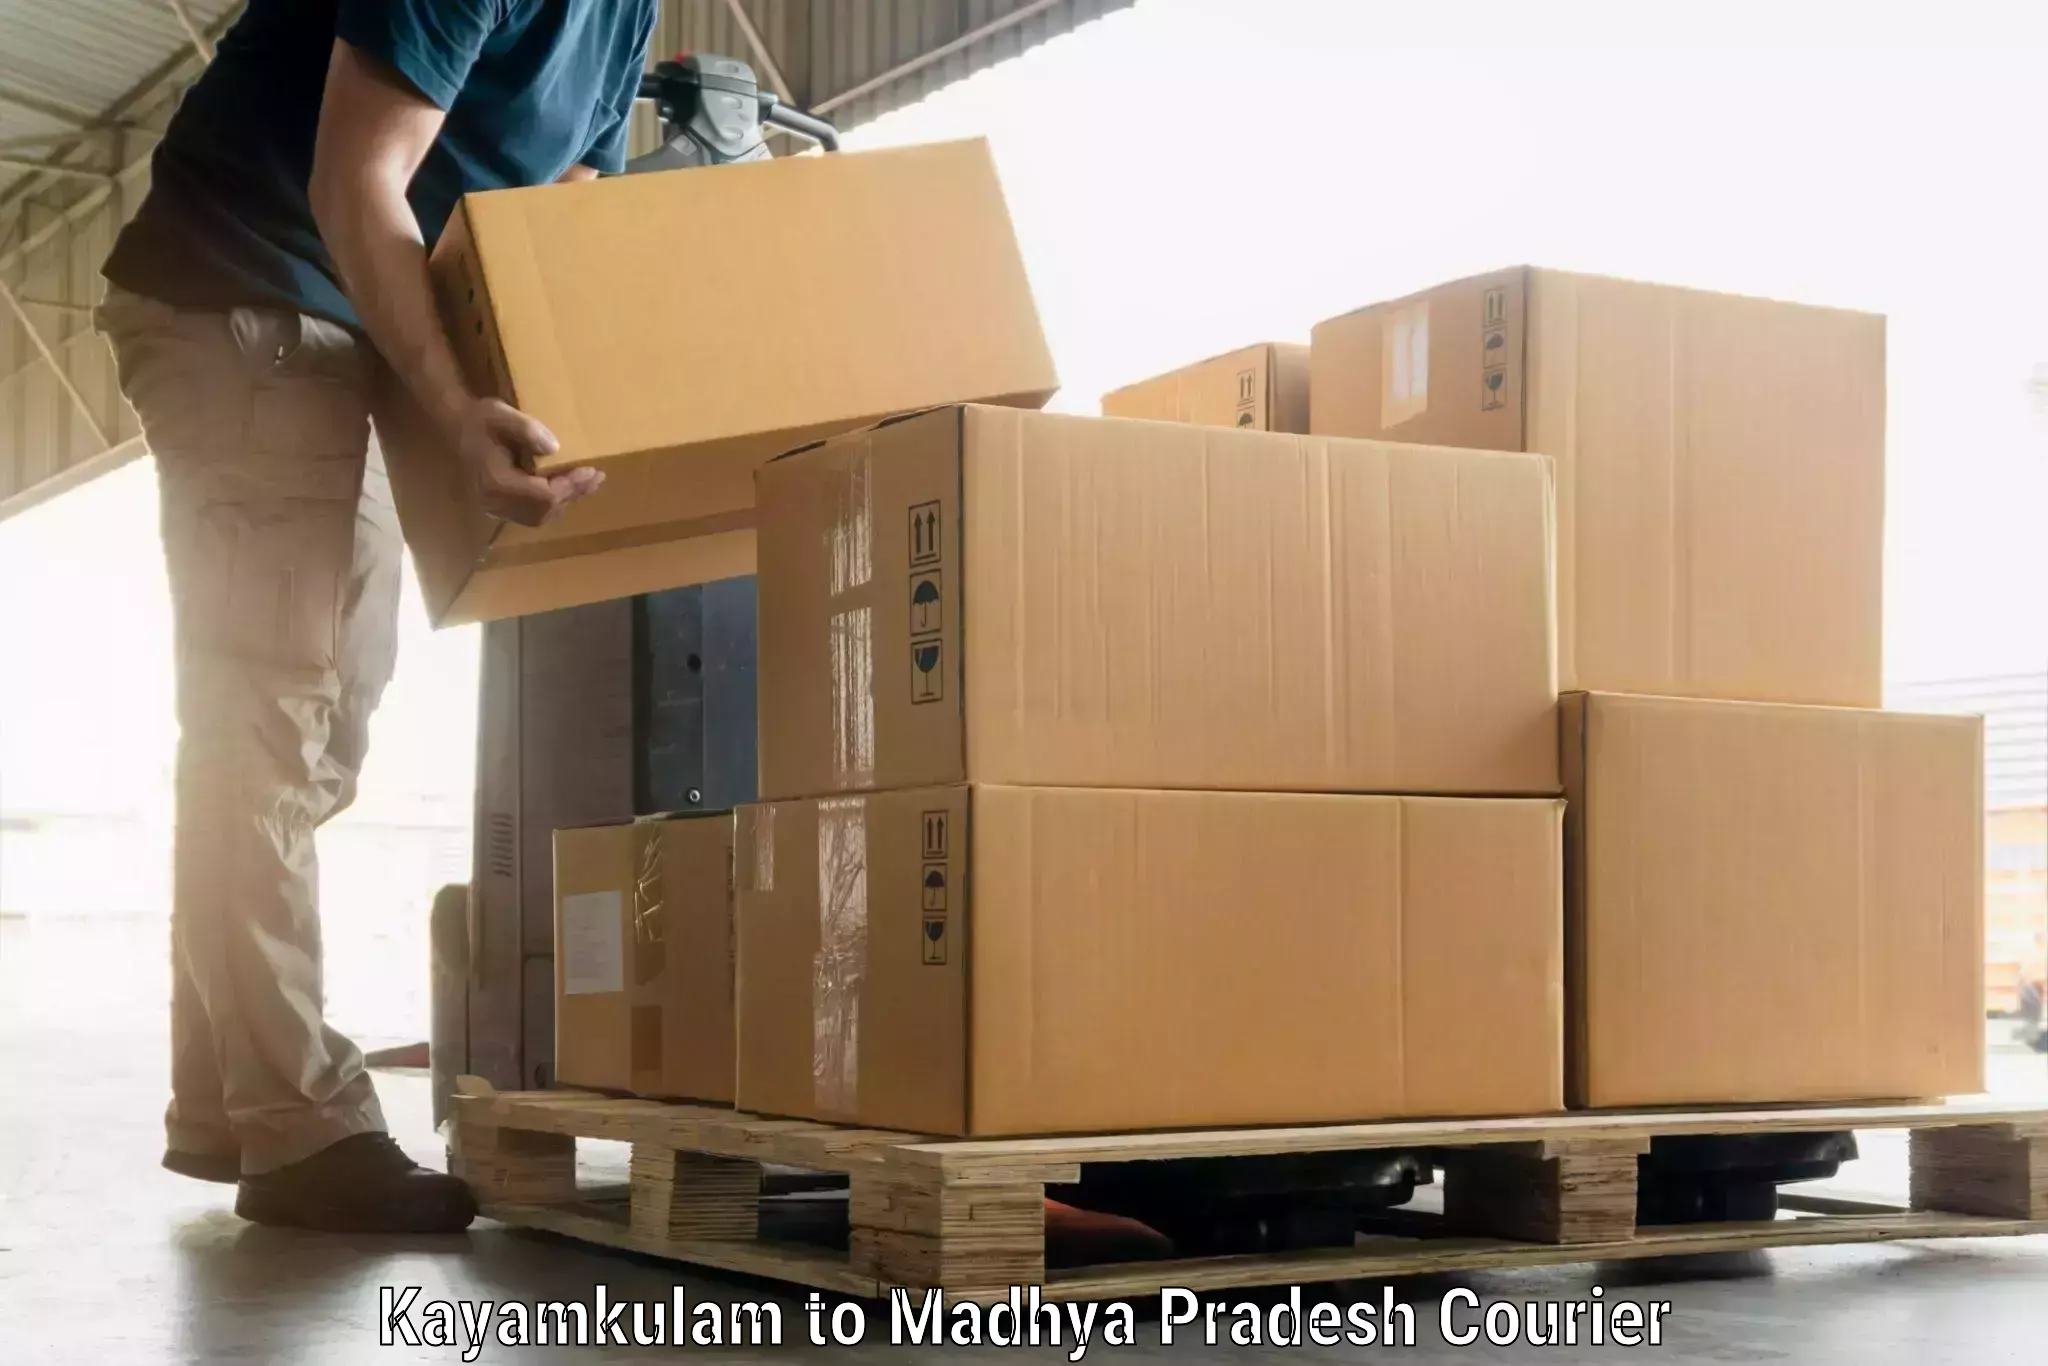 Personal effects shipping Kayamkulam to Rampur Baghelan